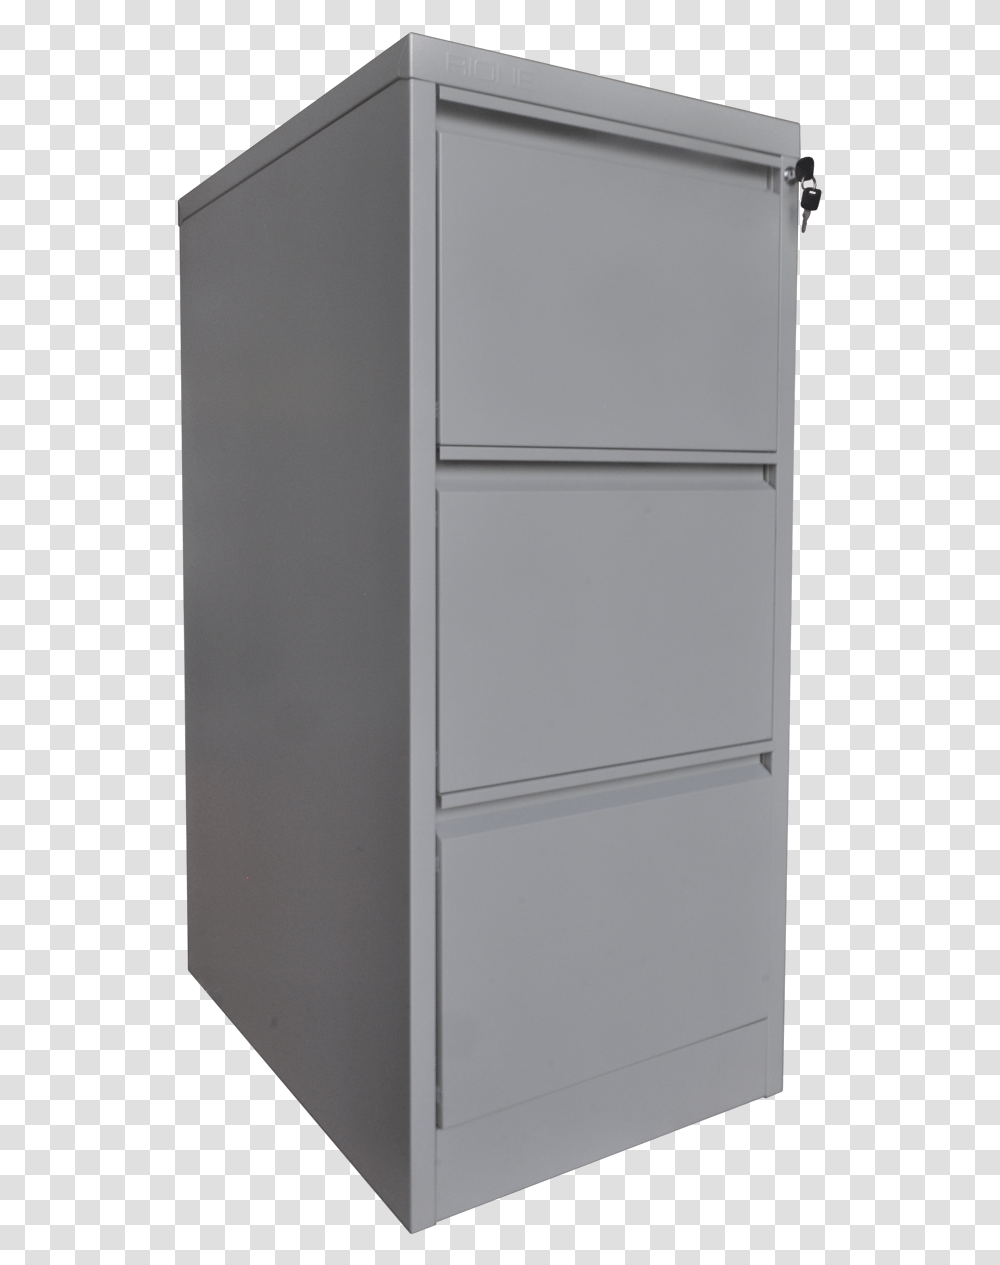 File Cabinet, Furniture, Drawer, Refrigerator, Appliance Transparent Png